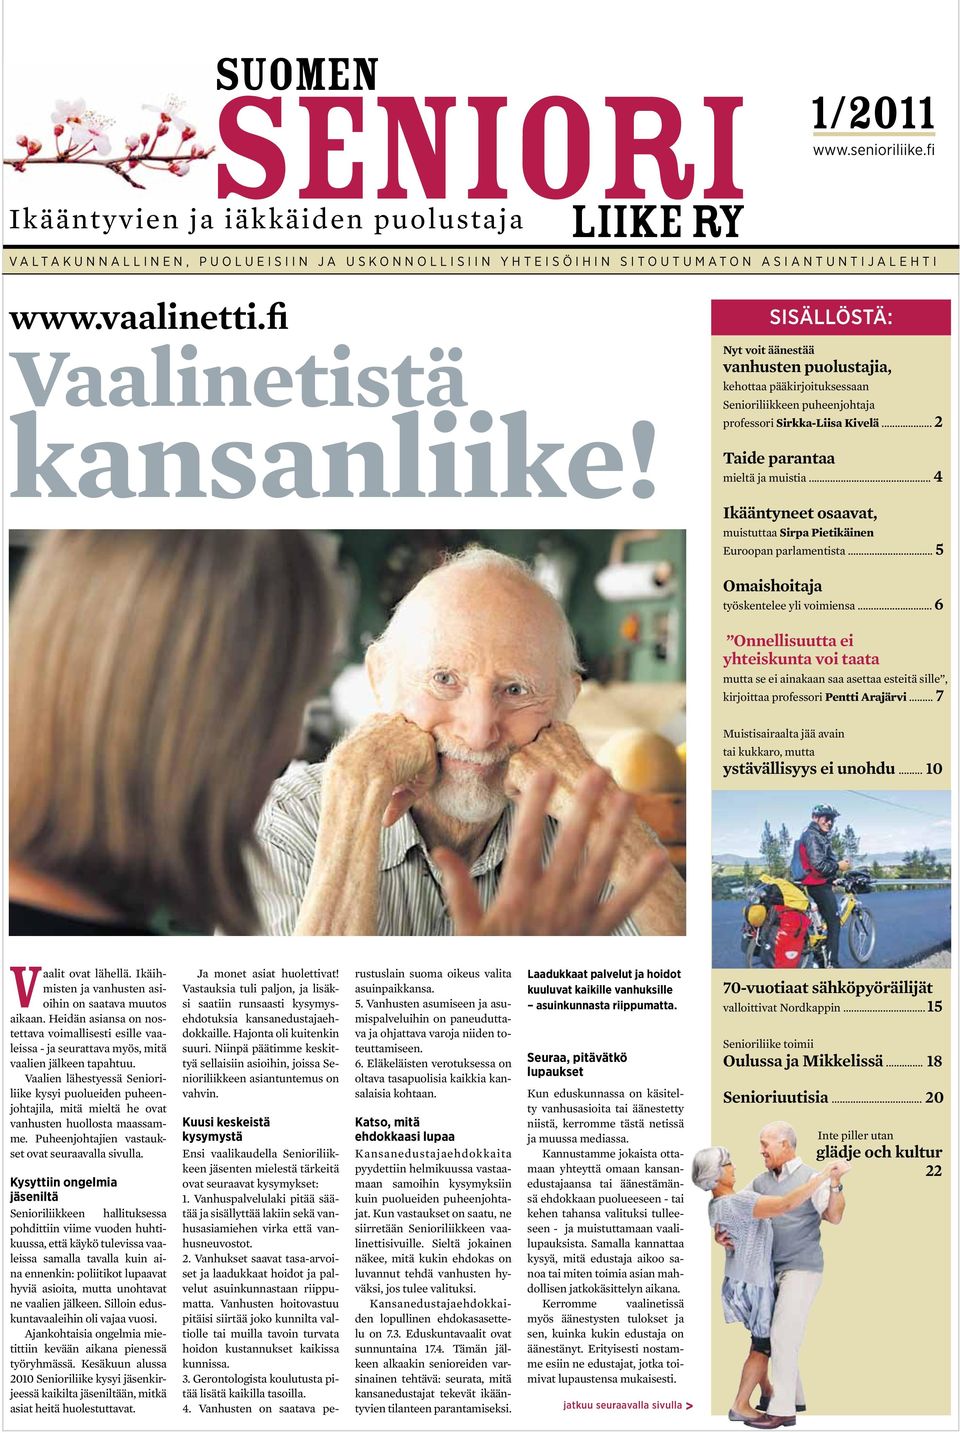 sisällöstä: Nyt voit äänestää vanhusten puolustajia, kehottaa pääkirjoituksessaan Senioriliikkeen puheenjohtaja professori Sirkka-Liisa Kivelä... 2 Taide parantaa mieltä ja muistia.